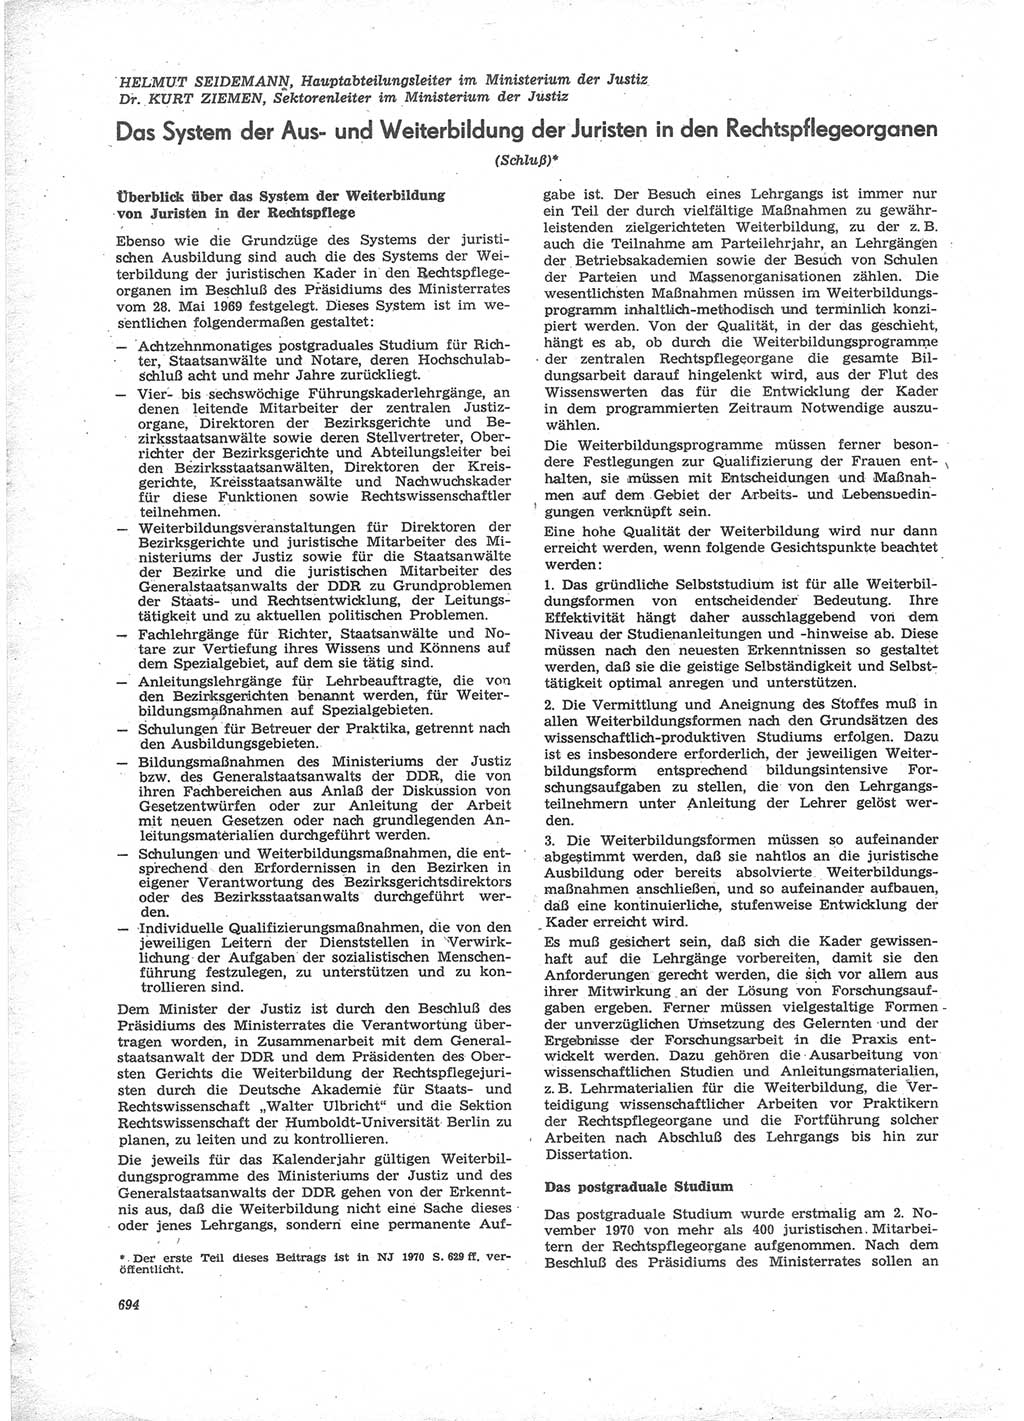 Neue Justiz (NJ), Zeitschrift für Recht und Rechtswissenschaft [Deutsche Demokratische Republik (DDR)], 24. Jahrgang 1970, Seite 694 (NJ DDR 1970, S. 694)